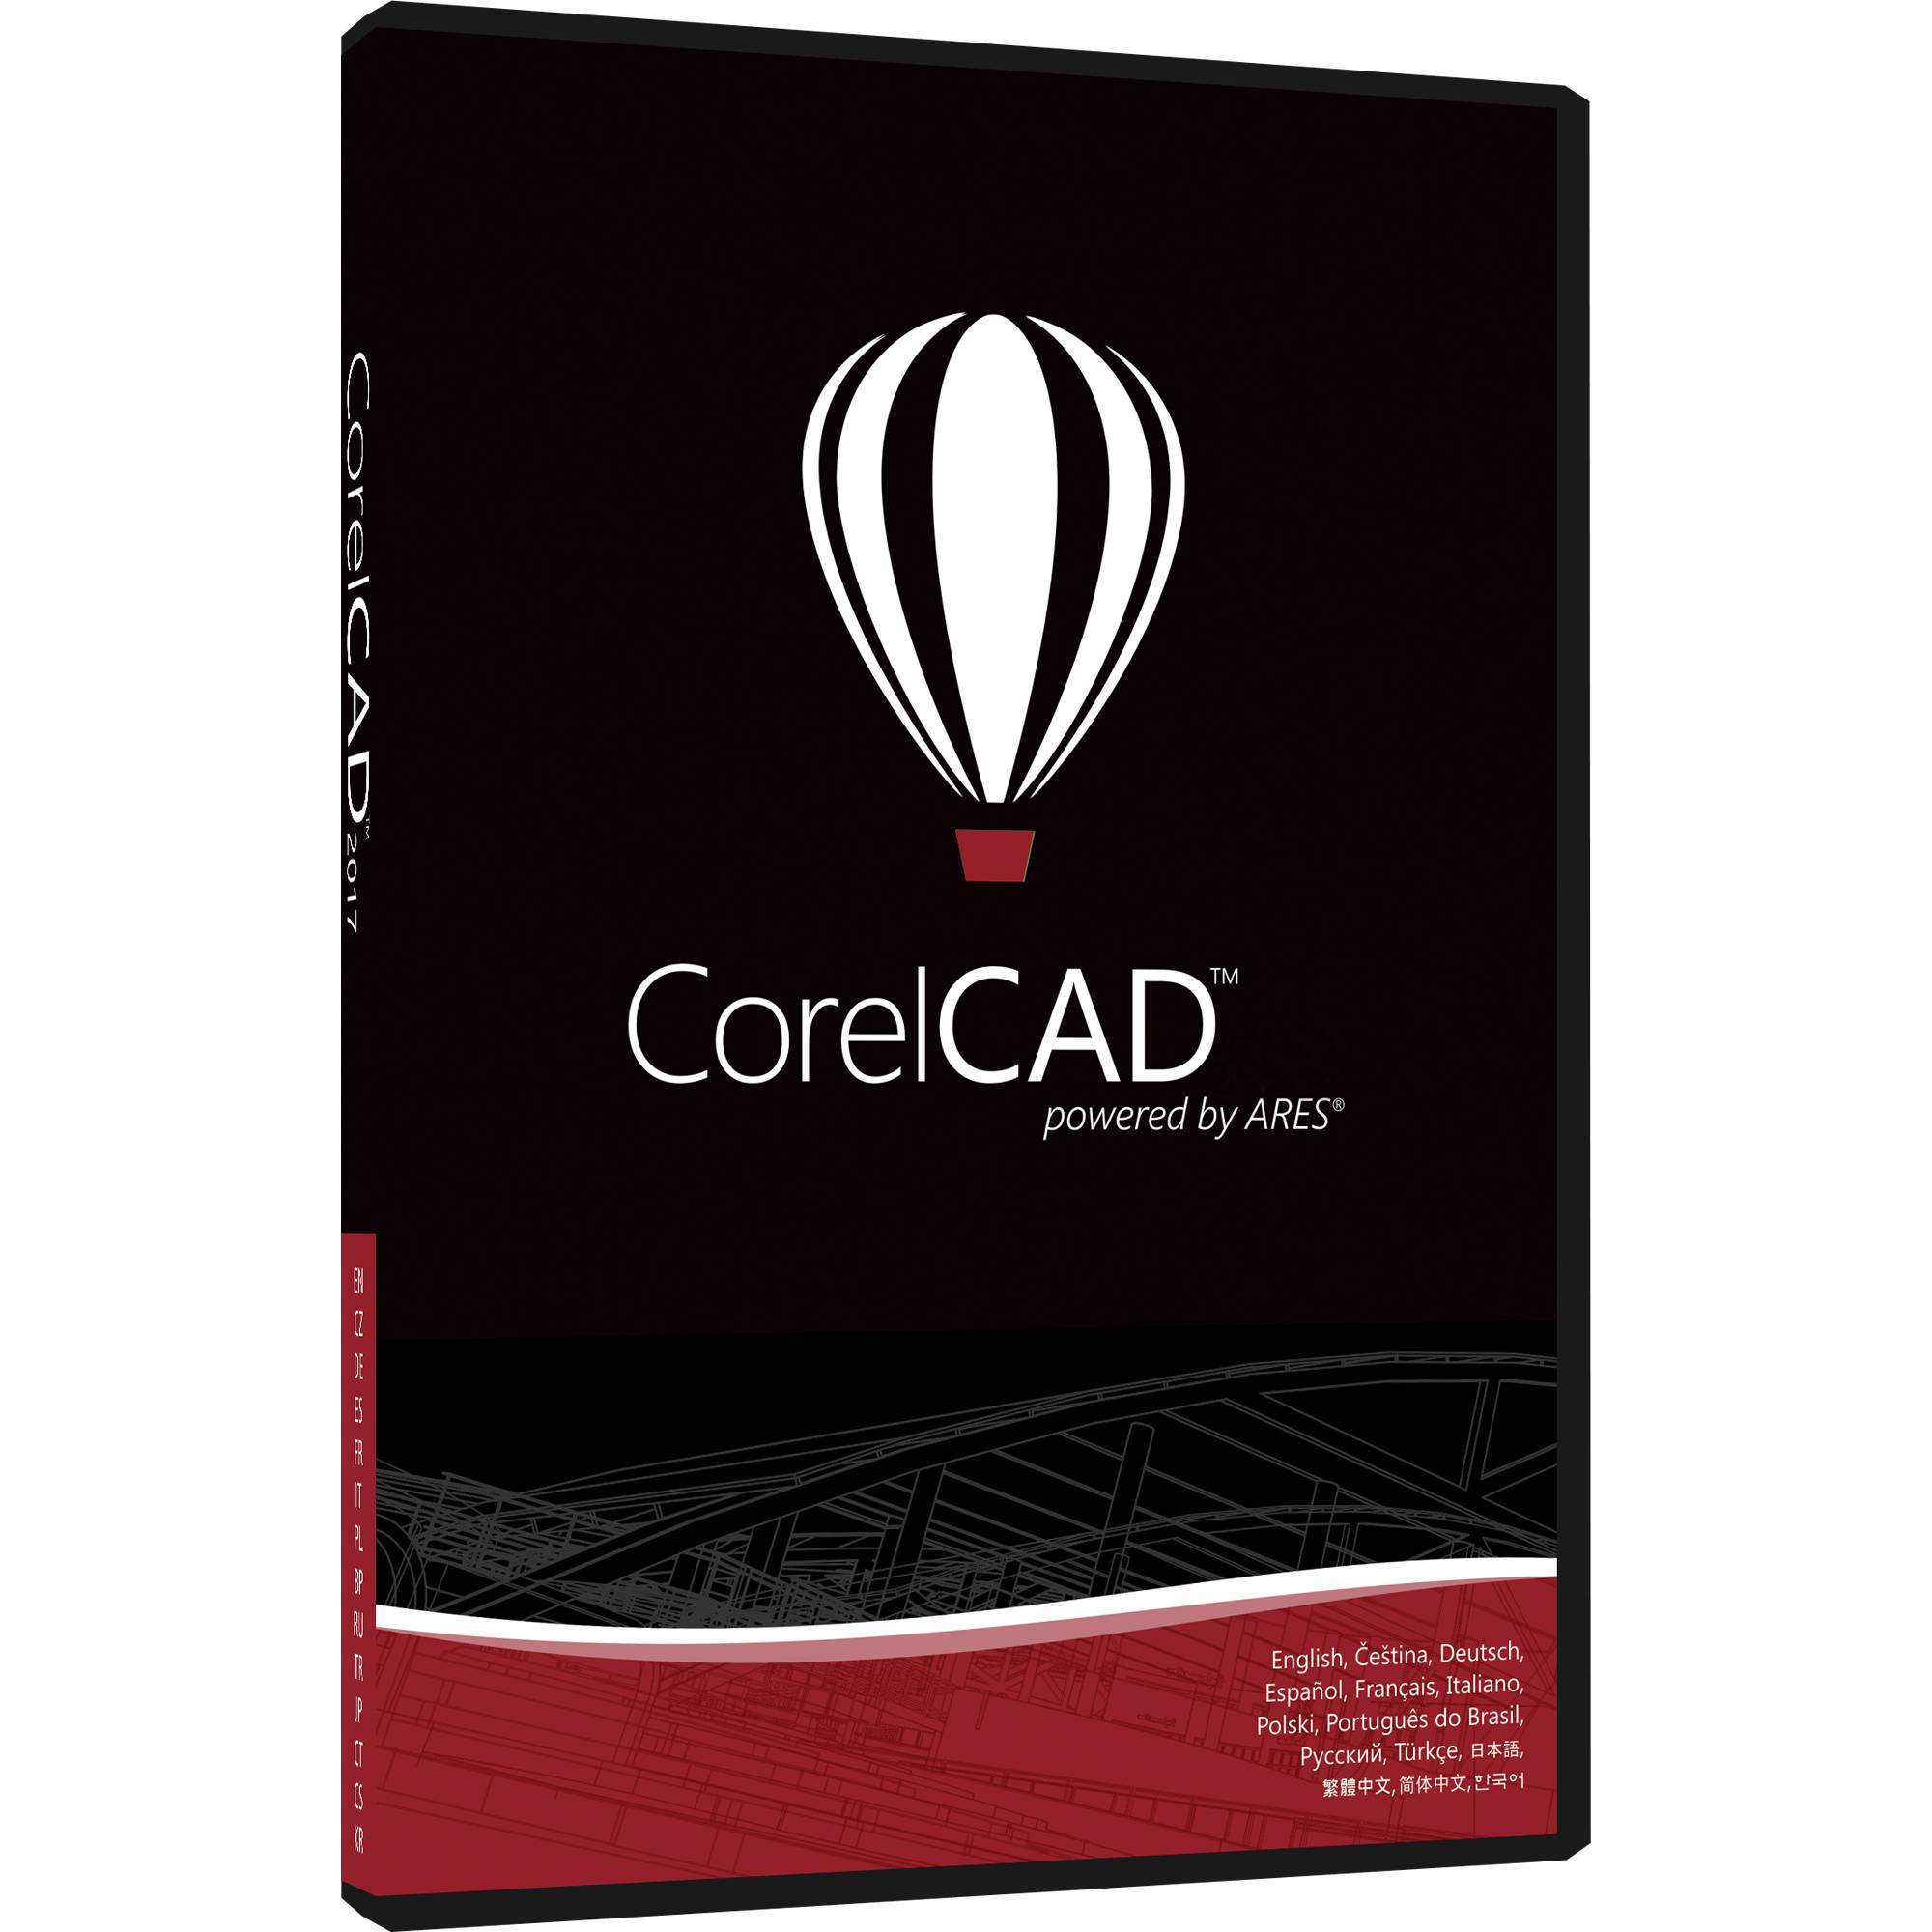 Compra al mejor precio la licencia para CorelCad con Grupo Deco - Colombia